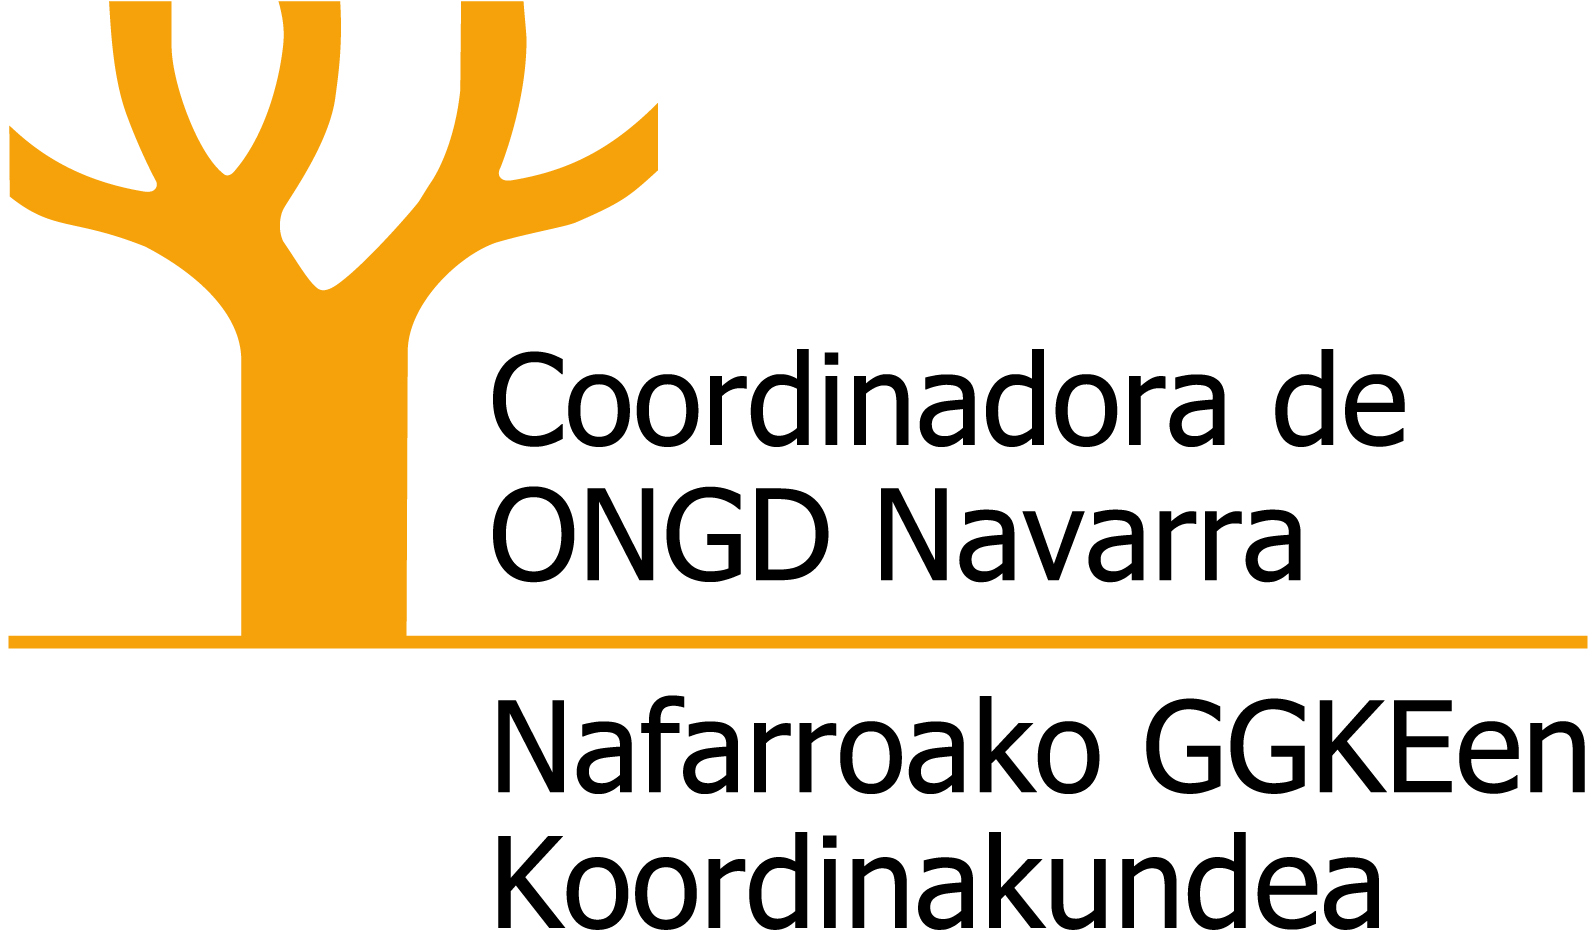 Coordinadora de ONGD de Navarra